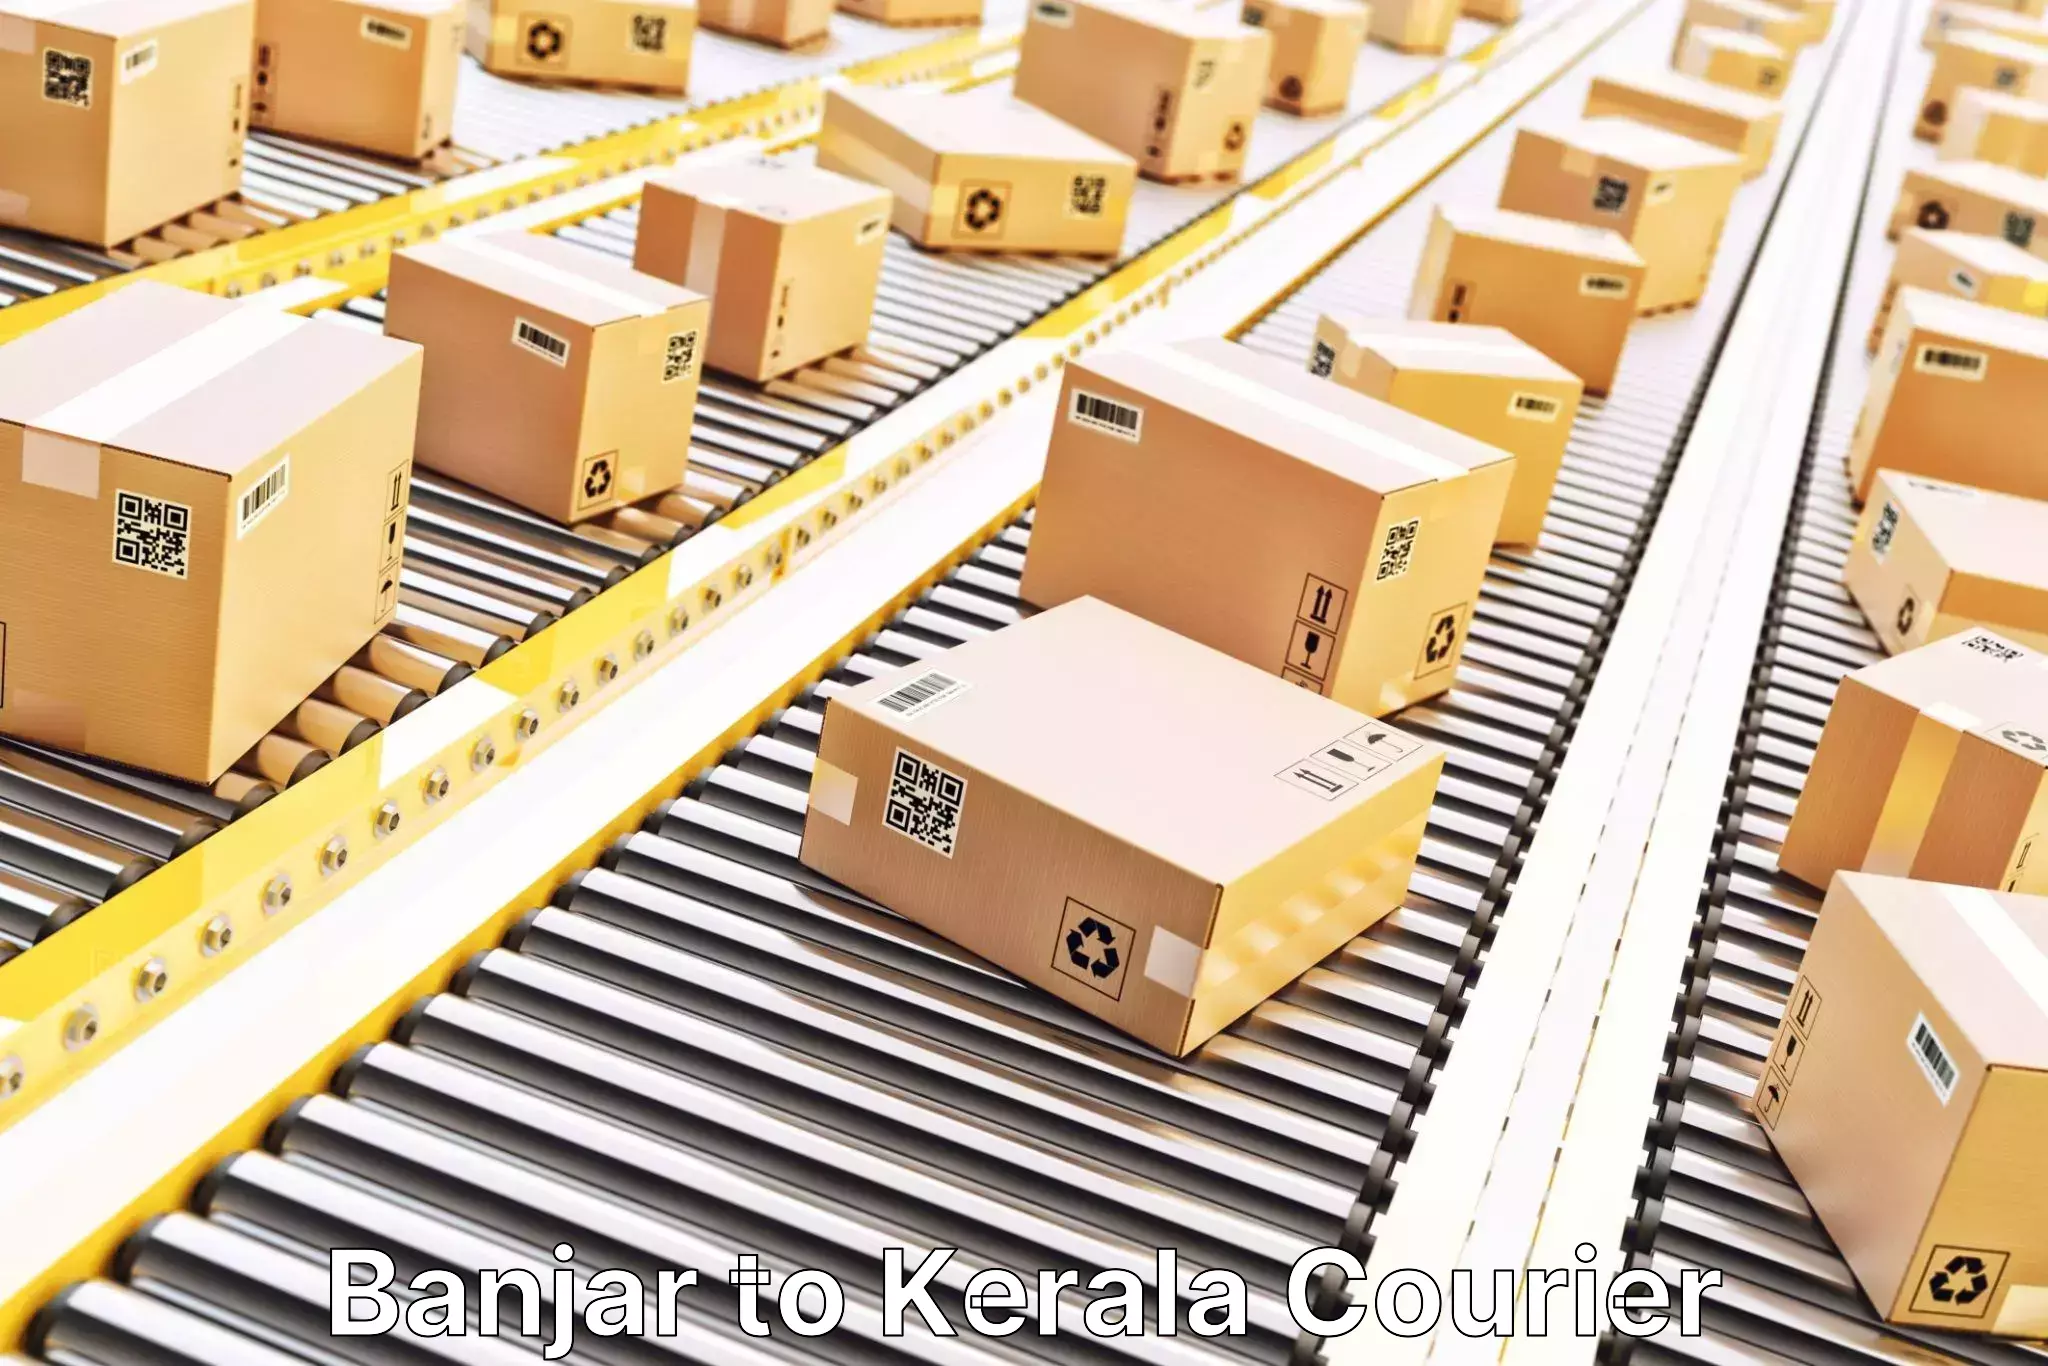 Customer-centric shipping Banjar to Kottarakkara